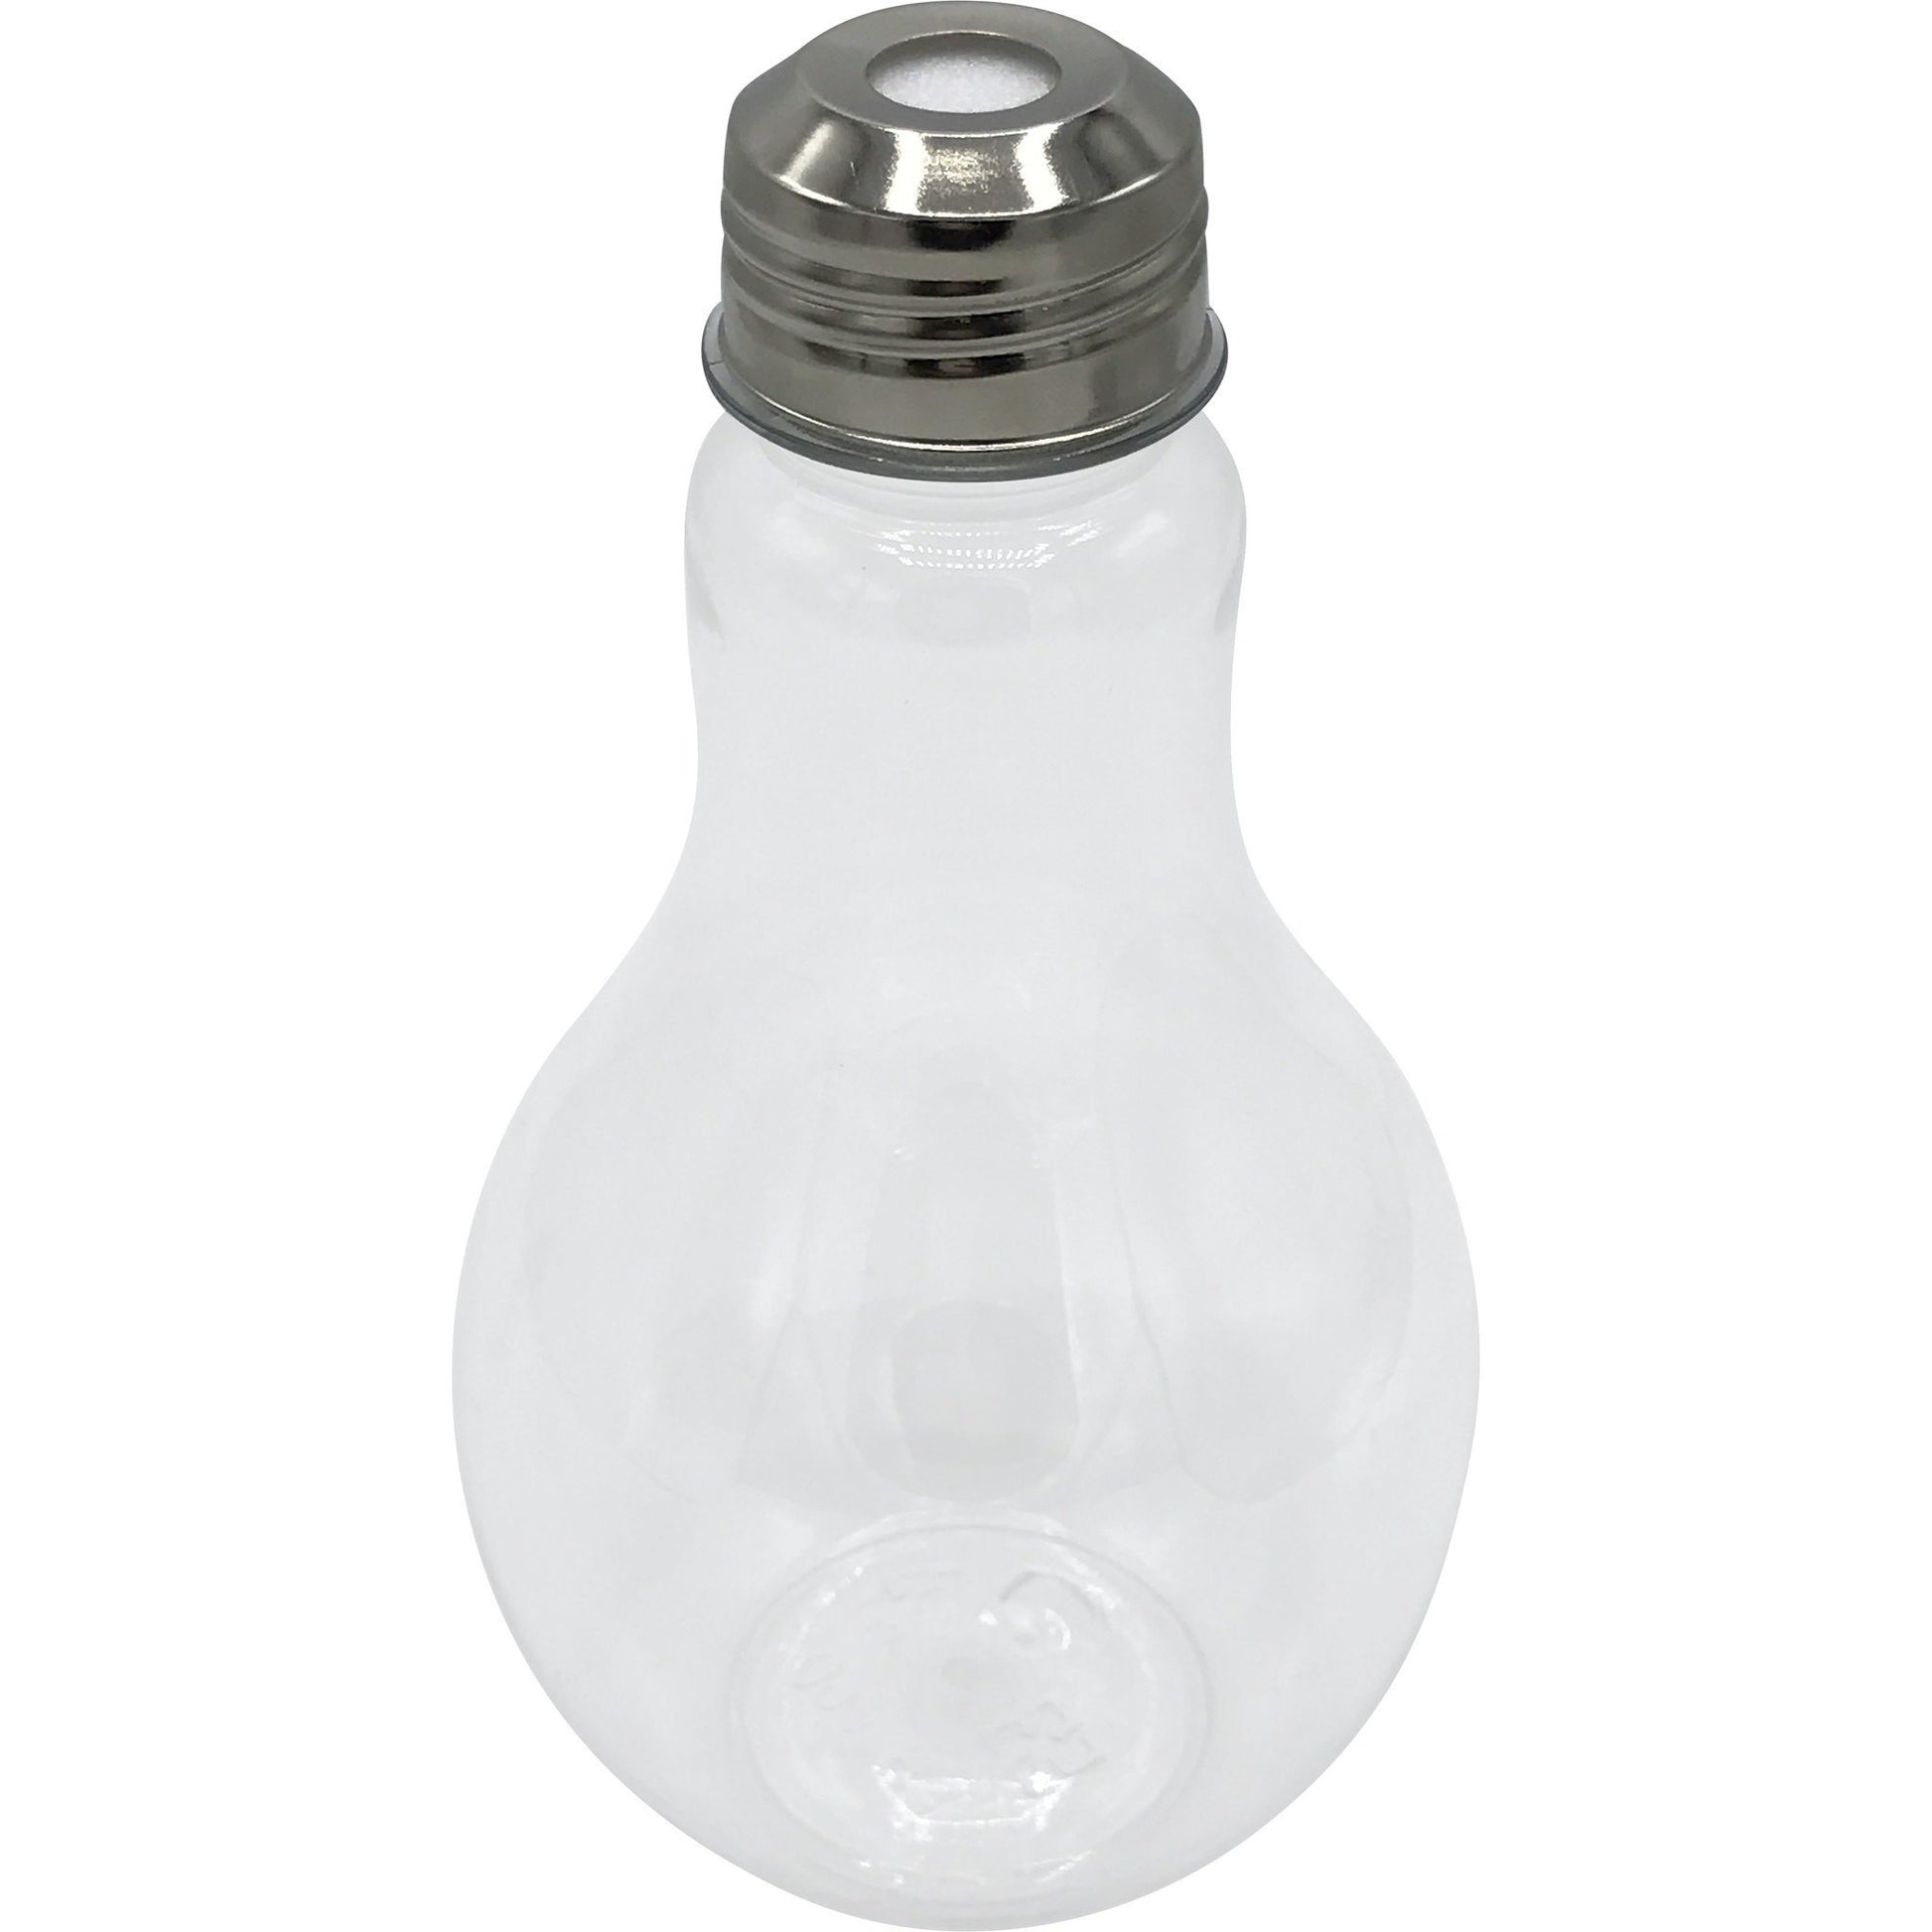 Light Bulb Cup - IcySkyy